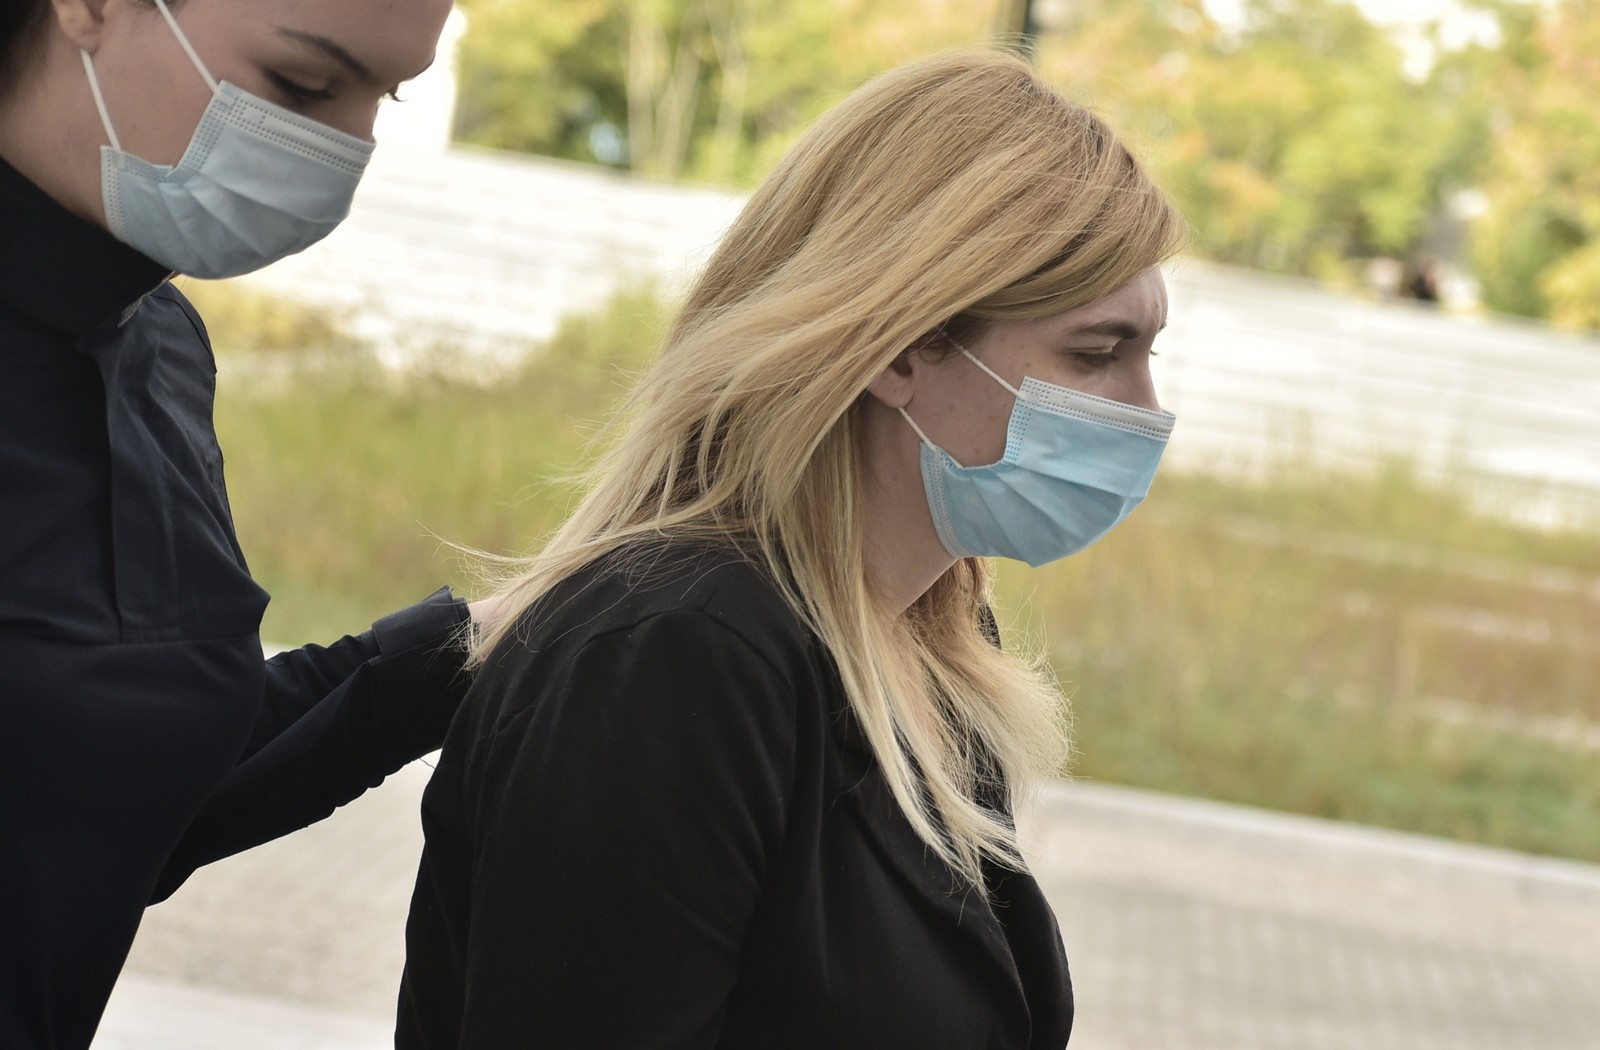 Δίκη Πισπιρίγκου: “Με ενδιέφερε η αποκατάσταση της Τζωρτζίνας” – Αιχμές κατά των γιατρών